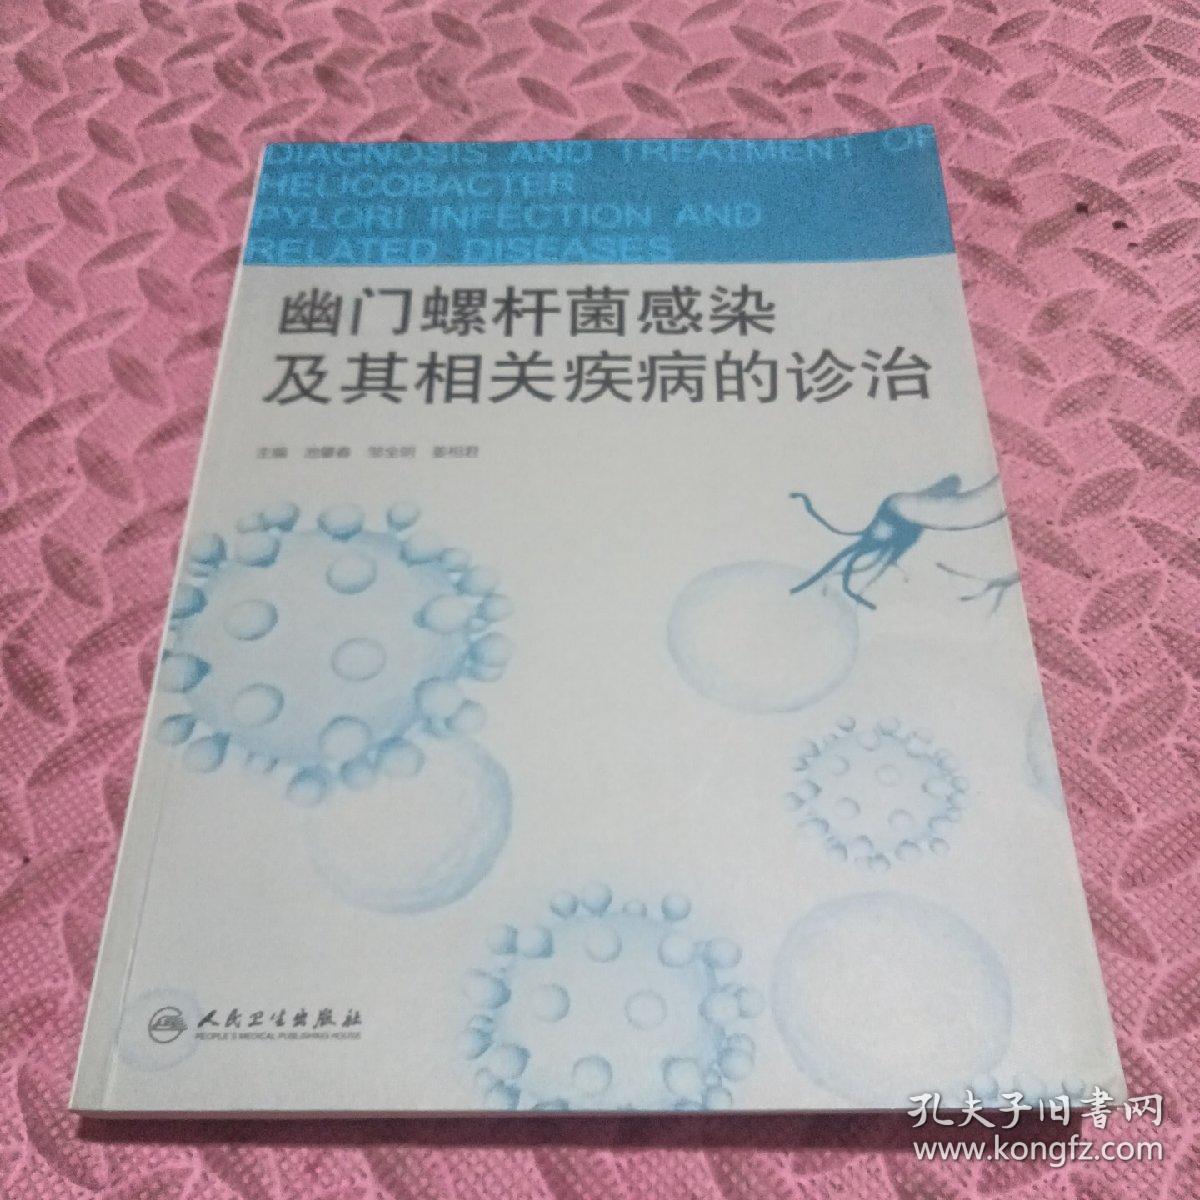 幽门螺杆菌感染及其相关疾病的诊治